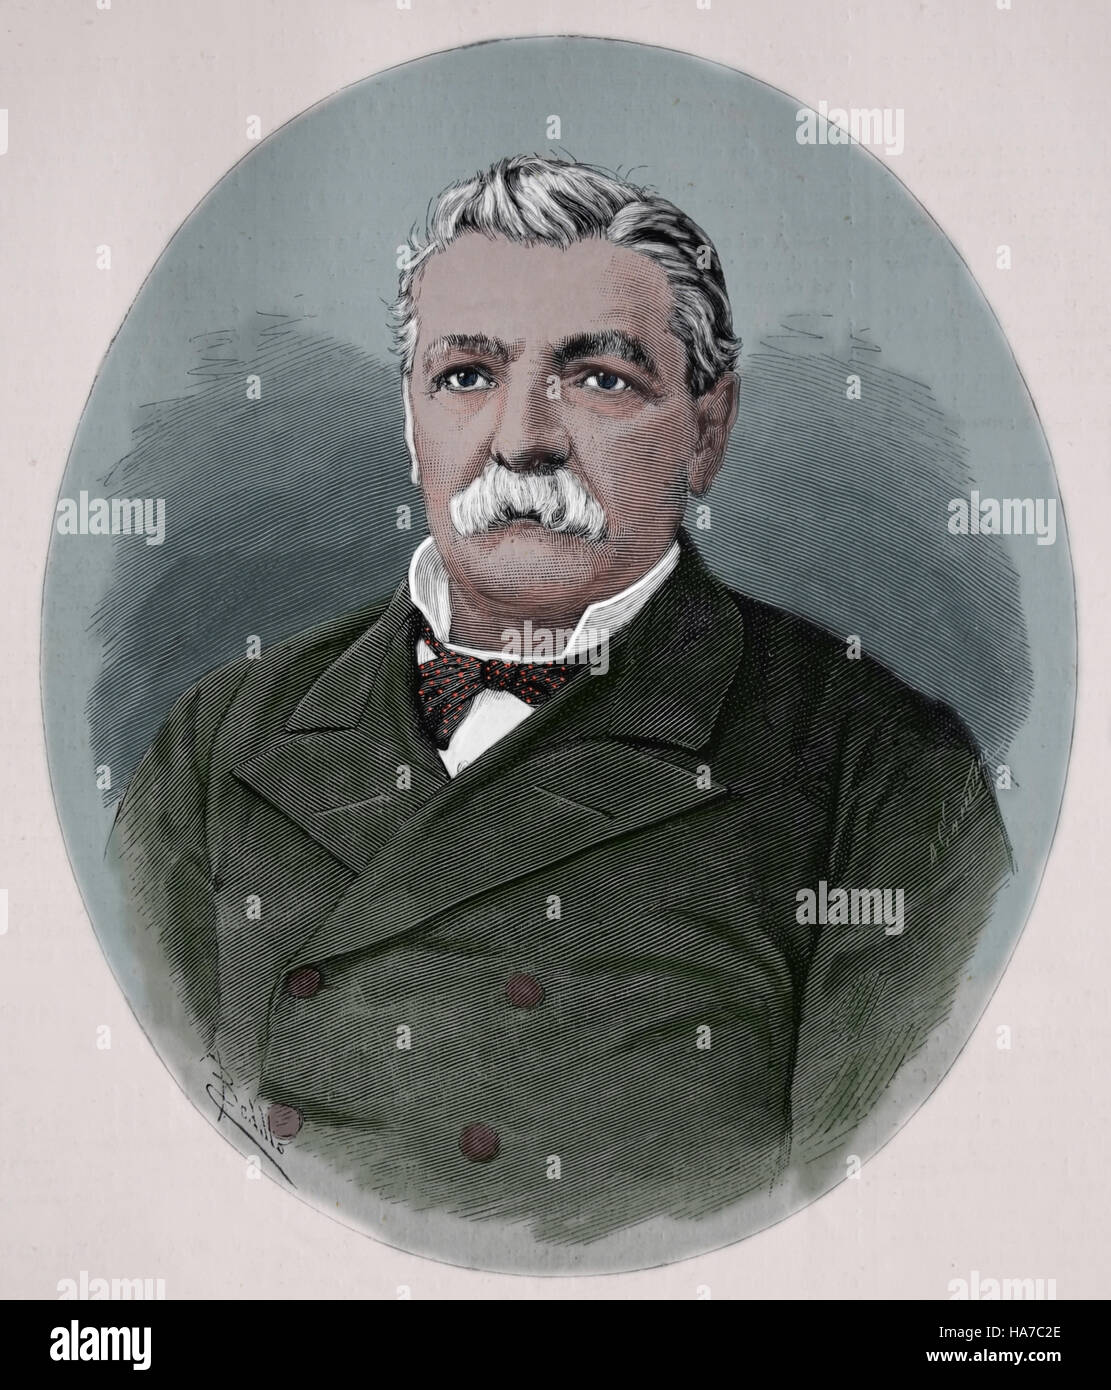 Domingo de Santa Maria (1825-1889). Chilean politician. President of Chile 1881-1886. Portrait. Engraving, 1882. Later colouration. Stock Photo